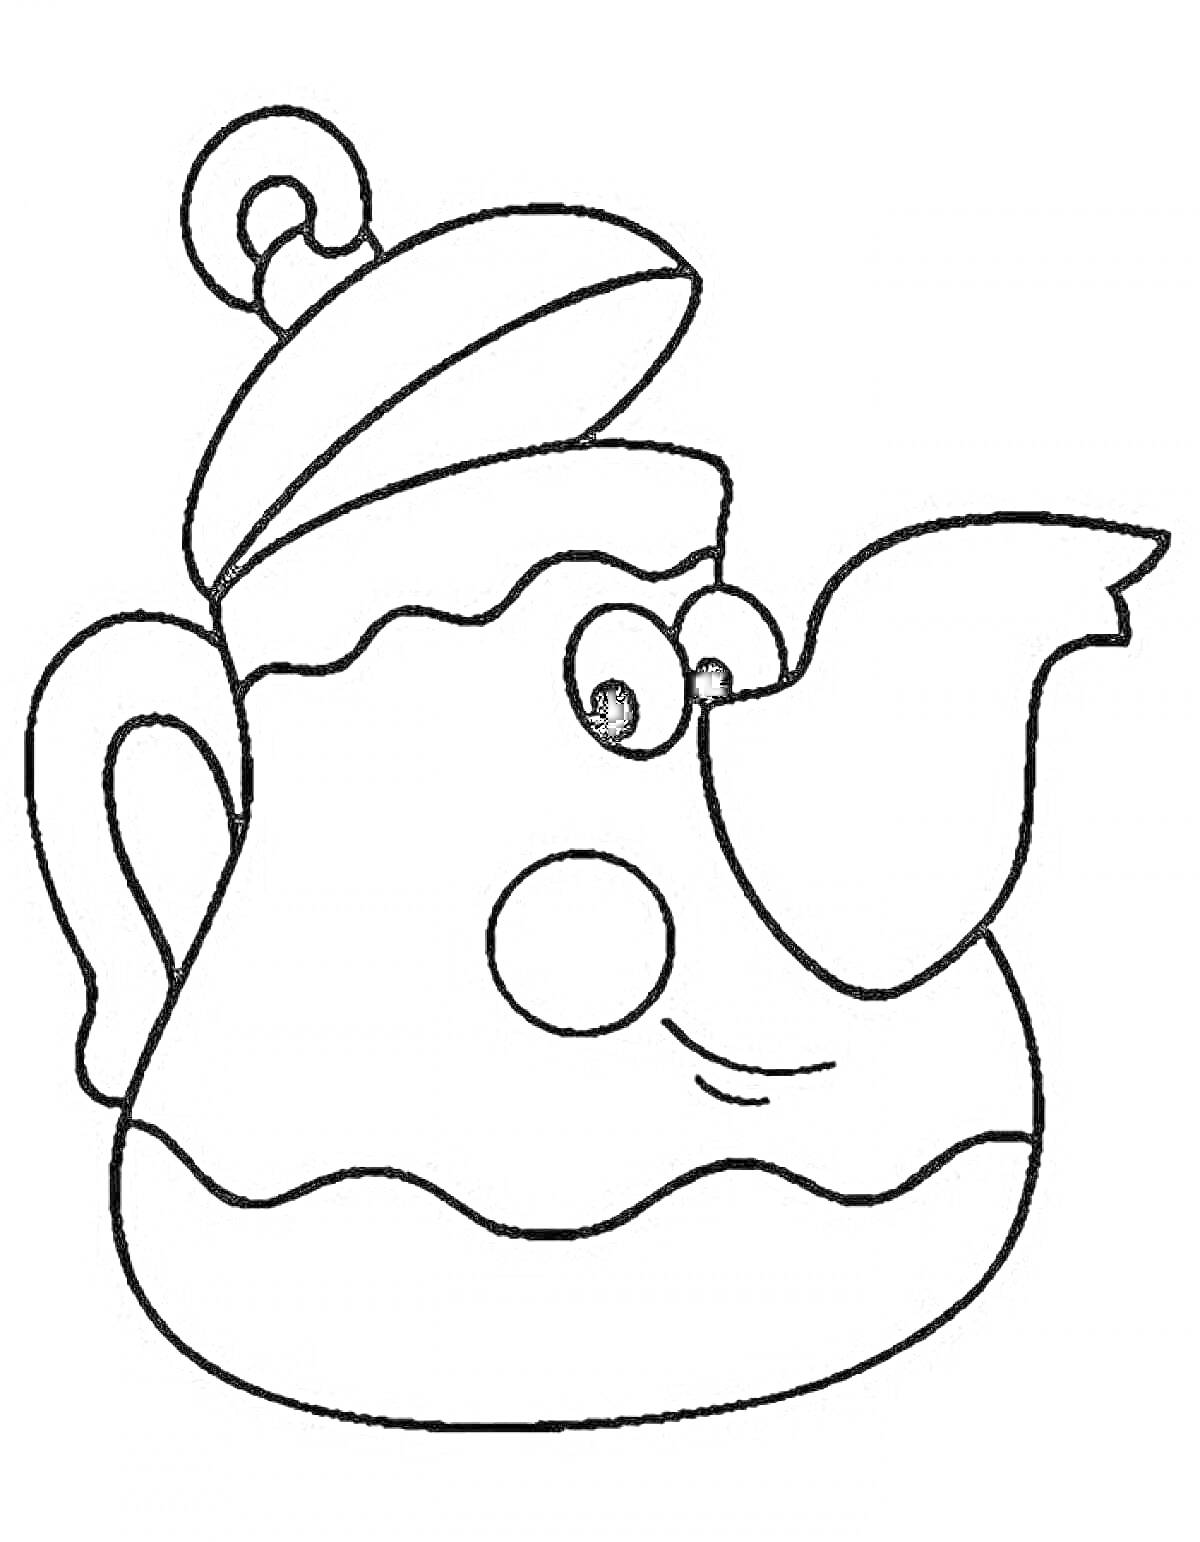 Раскраска Чайник с лицом и крышкой, чайник изображен с глазами и улыбкой, крышка приподнята